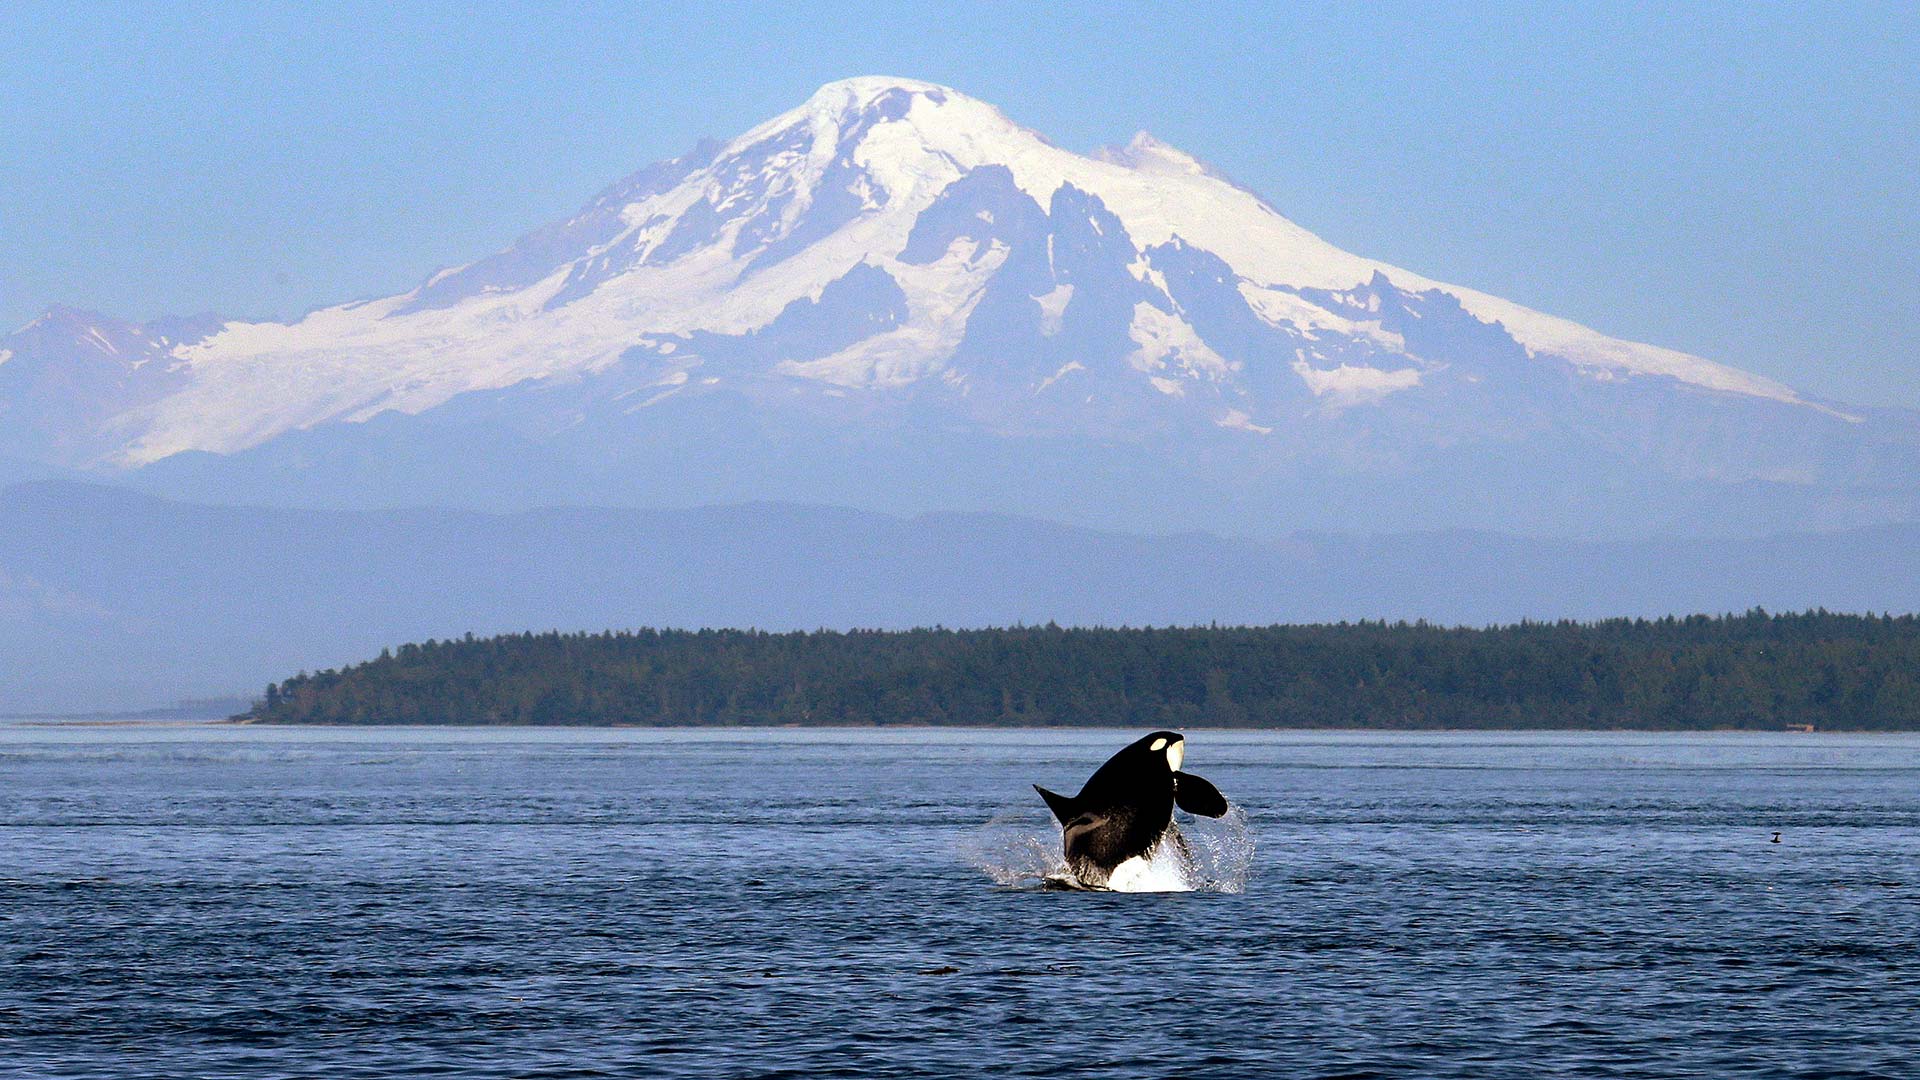 Una orca logra imitar el lenguaje humano y aprende a decir "hello"